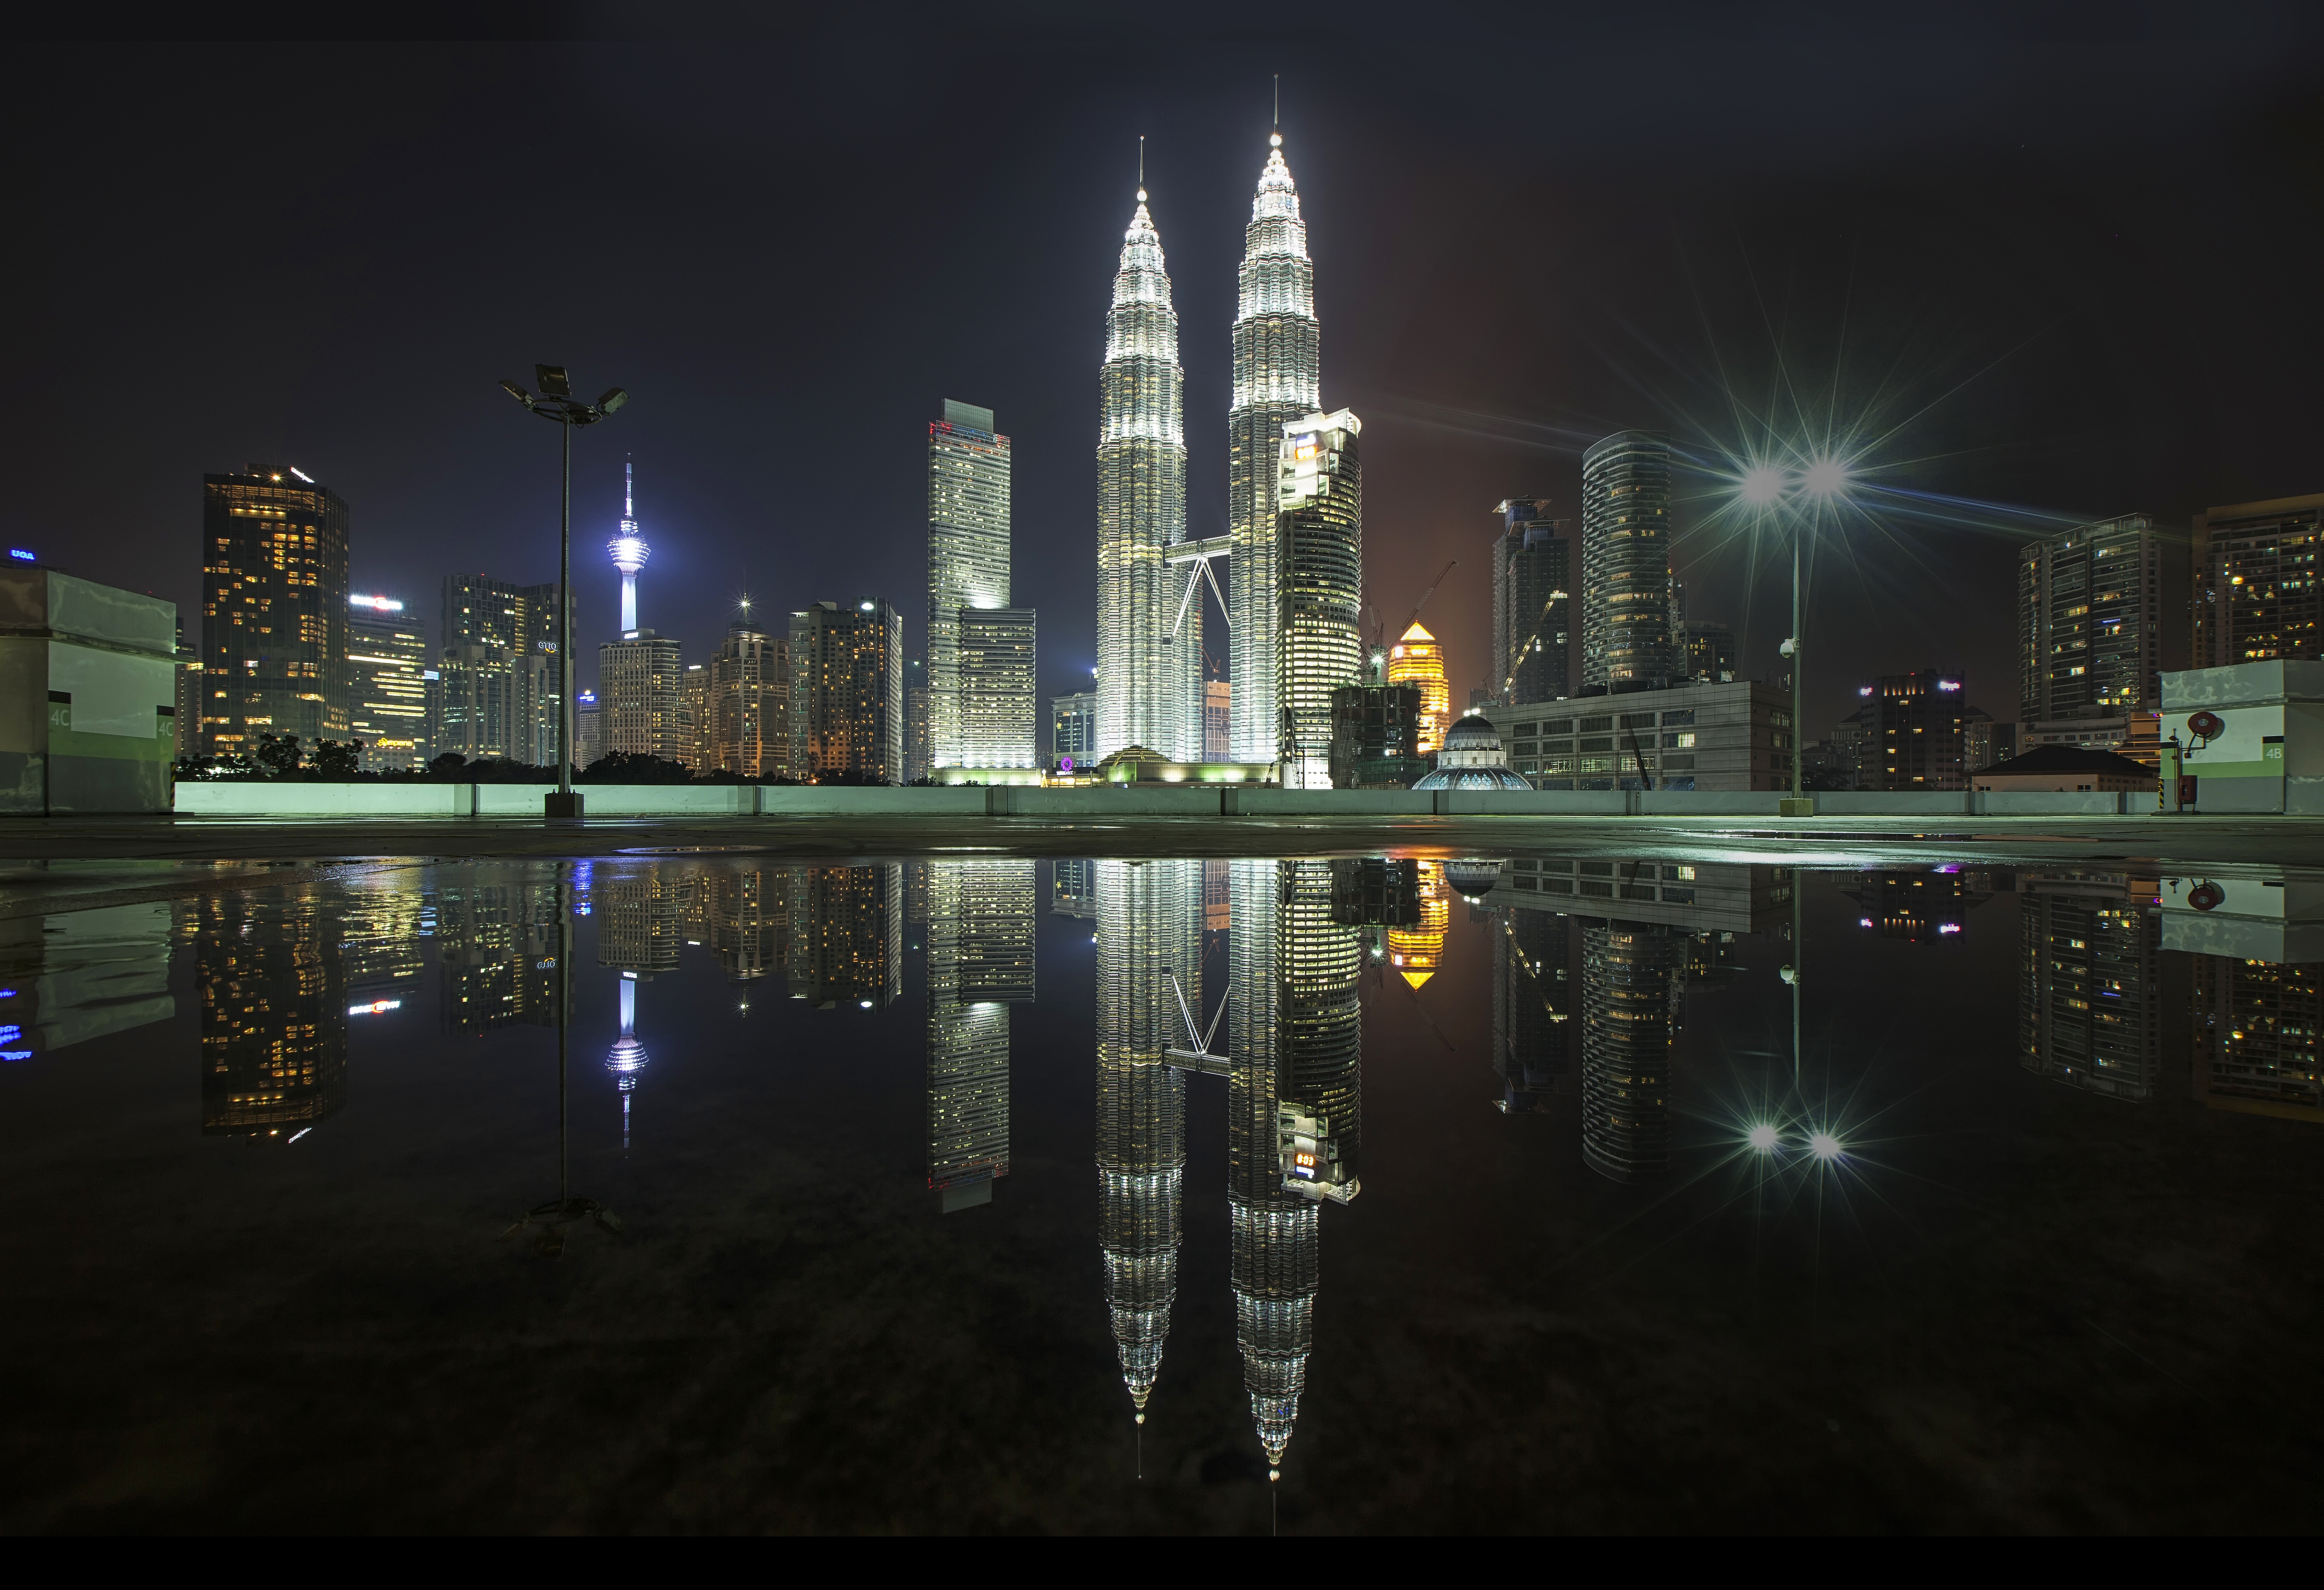 Tháp đôi Petronas - Petronas Twins Tower - Kuala Lumpur - Malaysia